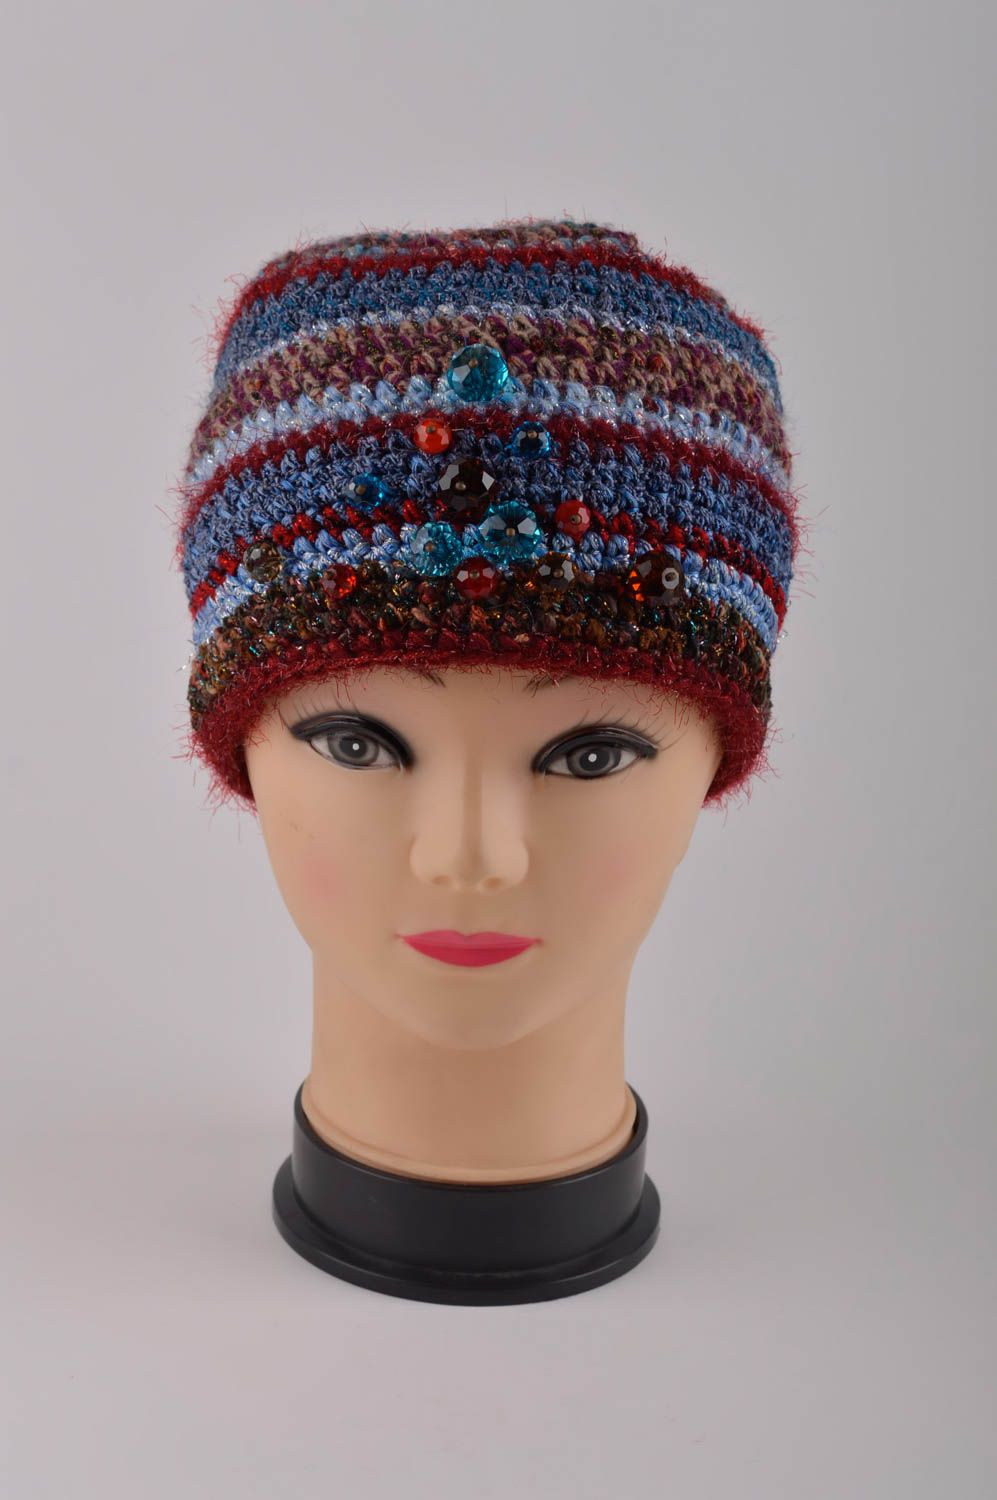 Handmade headwear unusual hat for girls gift ideas designer hat warm hat photo 8